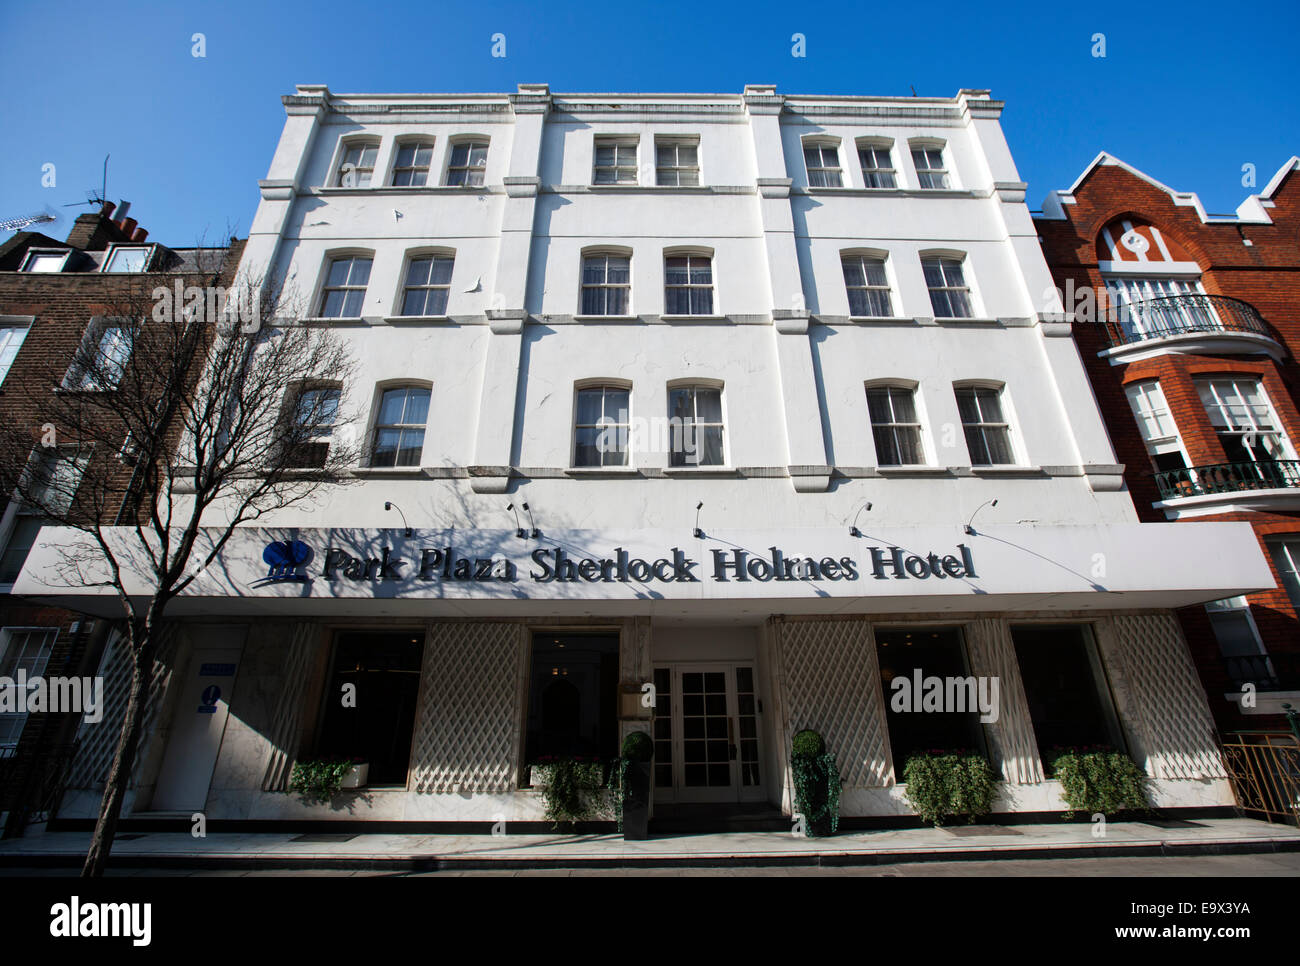 Park Plaza Sherlock Holmes extérieur arrière Hôtels, Marylebone, London, England, UK Banque D'Images